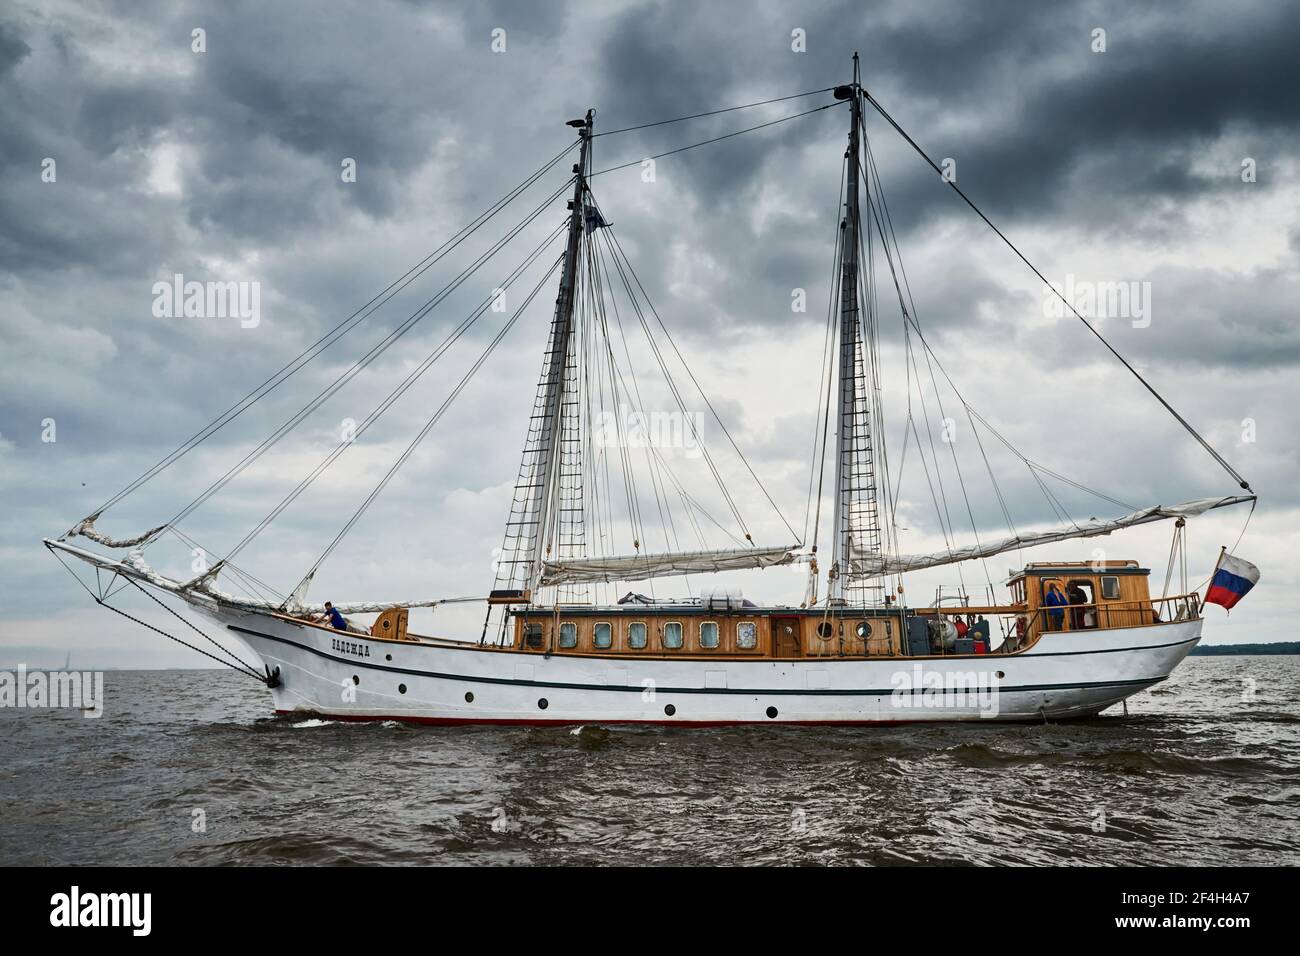 Russland, St.Petersburg, 31. August 2020: Antike Segelfrigate von weißer Farbe zum Meer, der sinkende Sturmhimmel, Segel sind abgesenkt, Masten und Seile Stockfoto